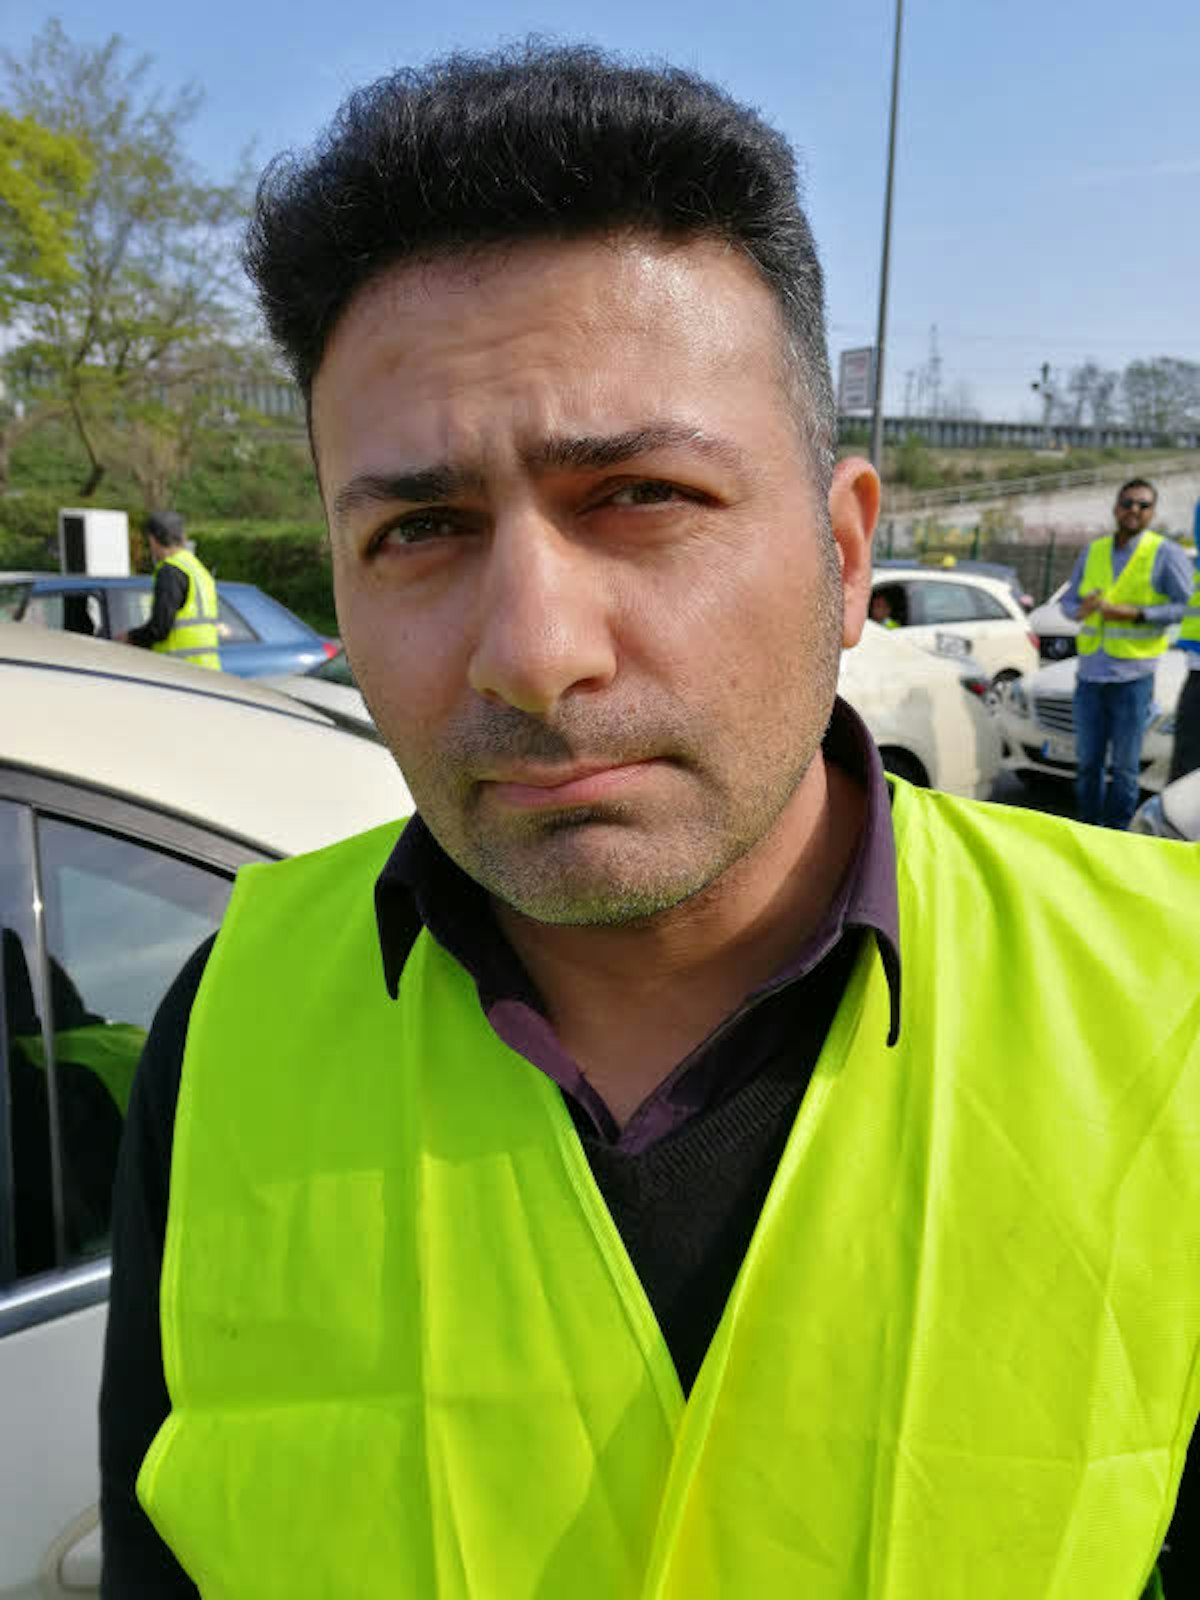 Taxifahrer Yüksel Karaman: „Wenn jetzt die Billigkonkurrenz kommt, haben wir keine Chance mehr.“